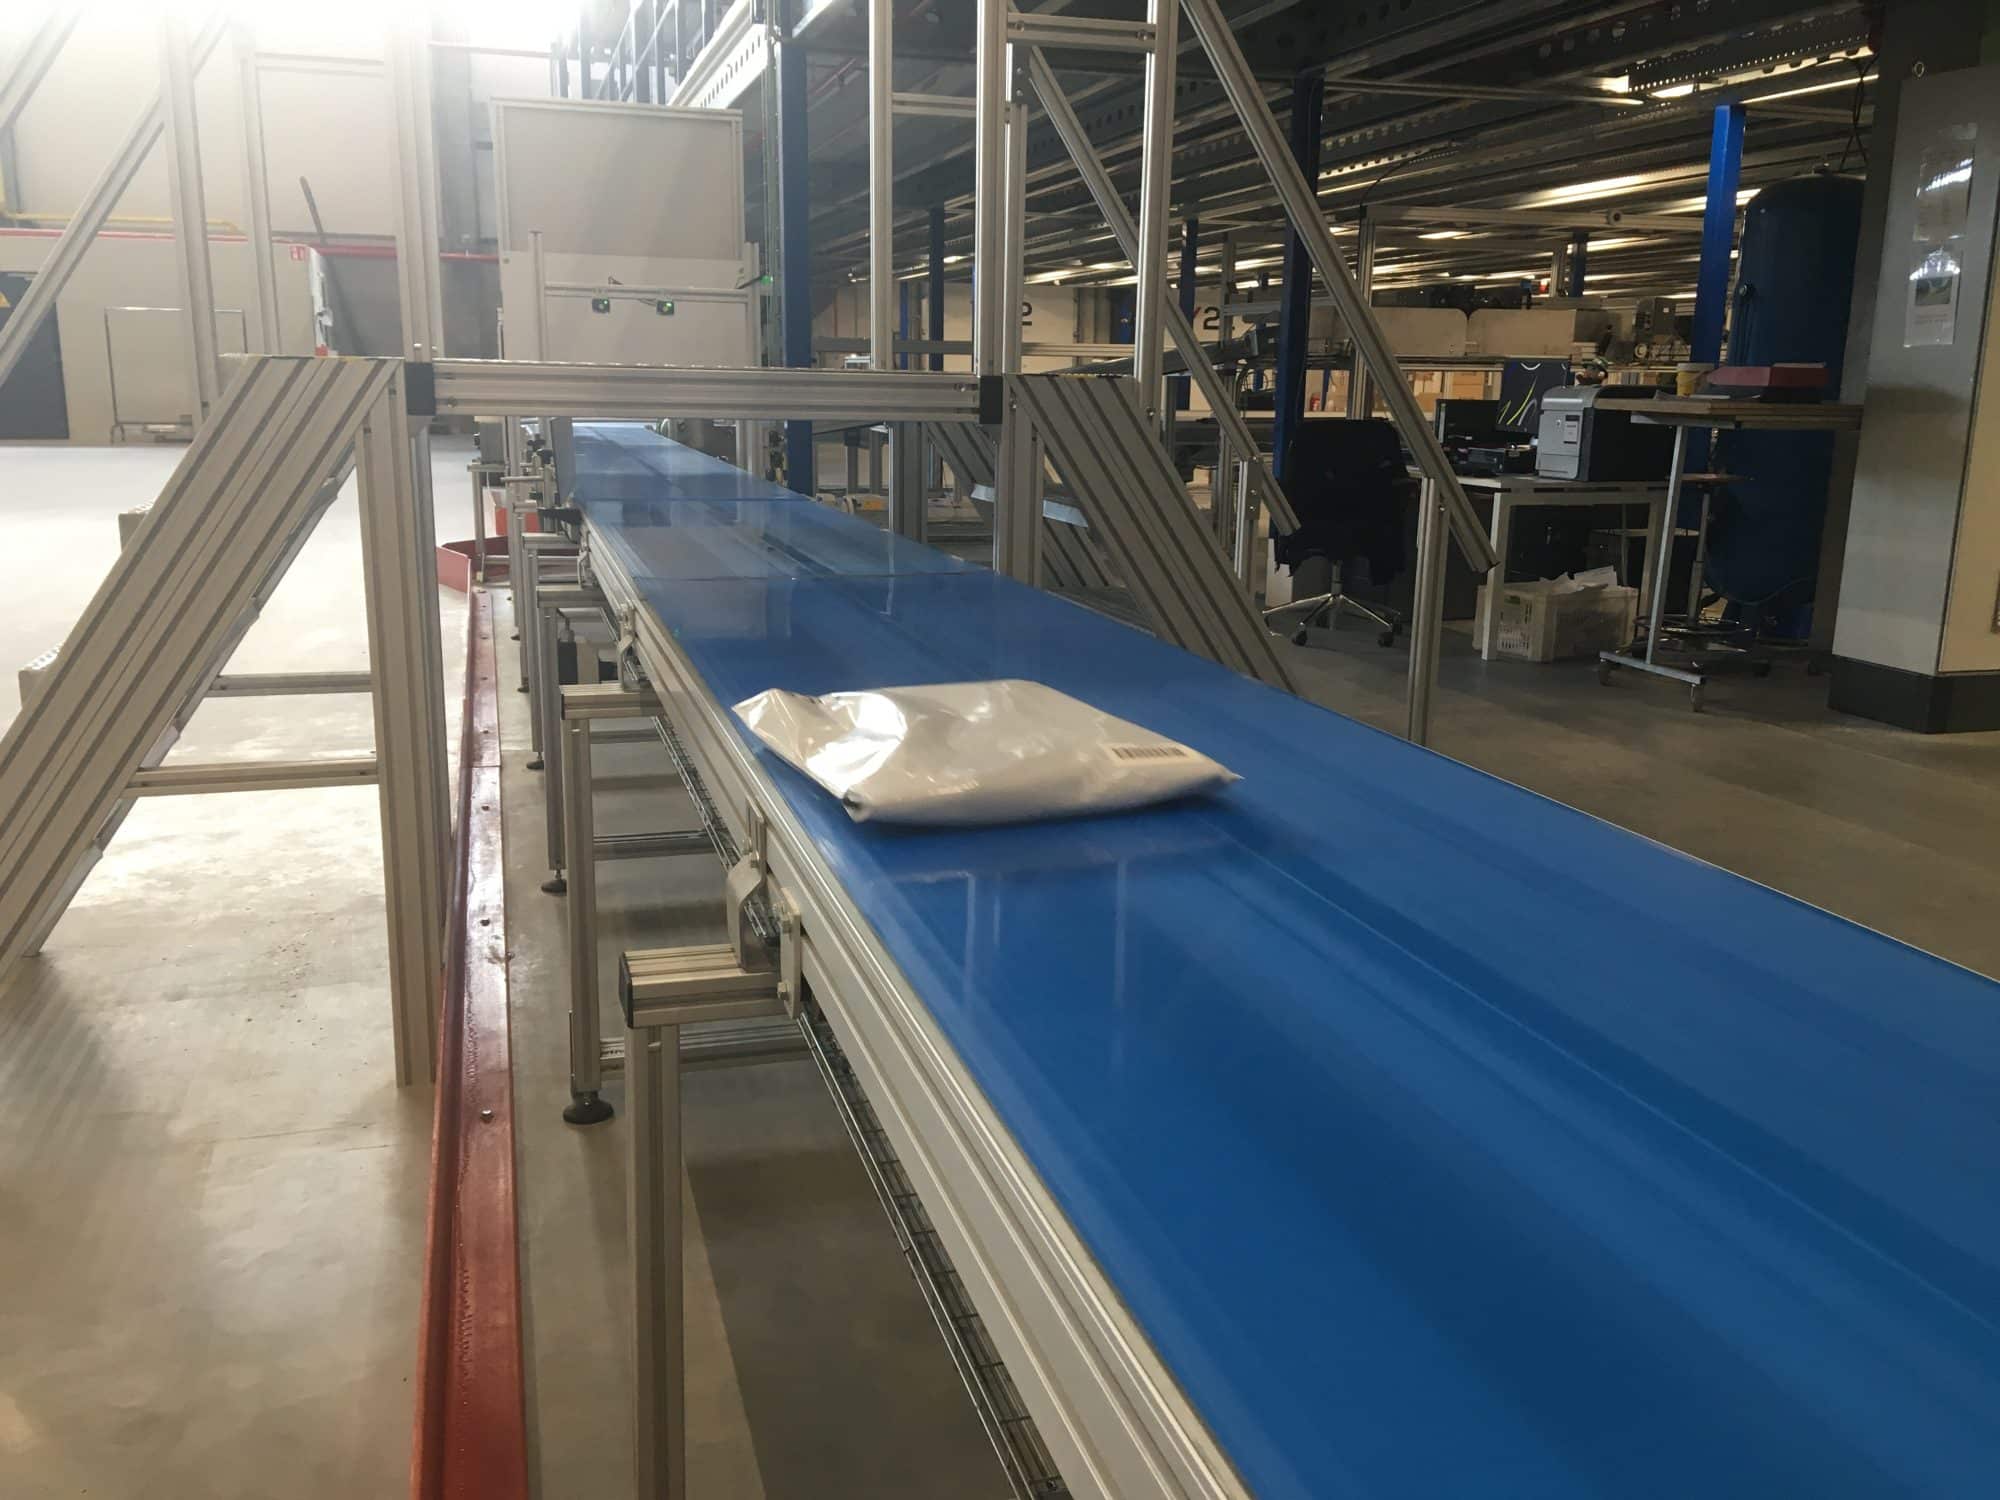 Voorbeeld van transportbanden voor polybags, gebruikt om eenvoudig polybags te transporteren doorheen uw fabriek of magazijn.